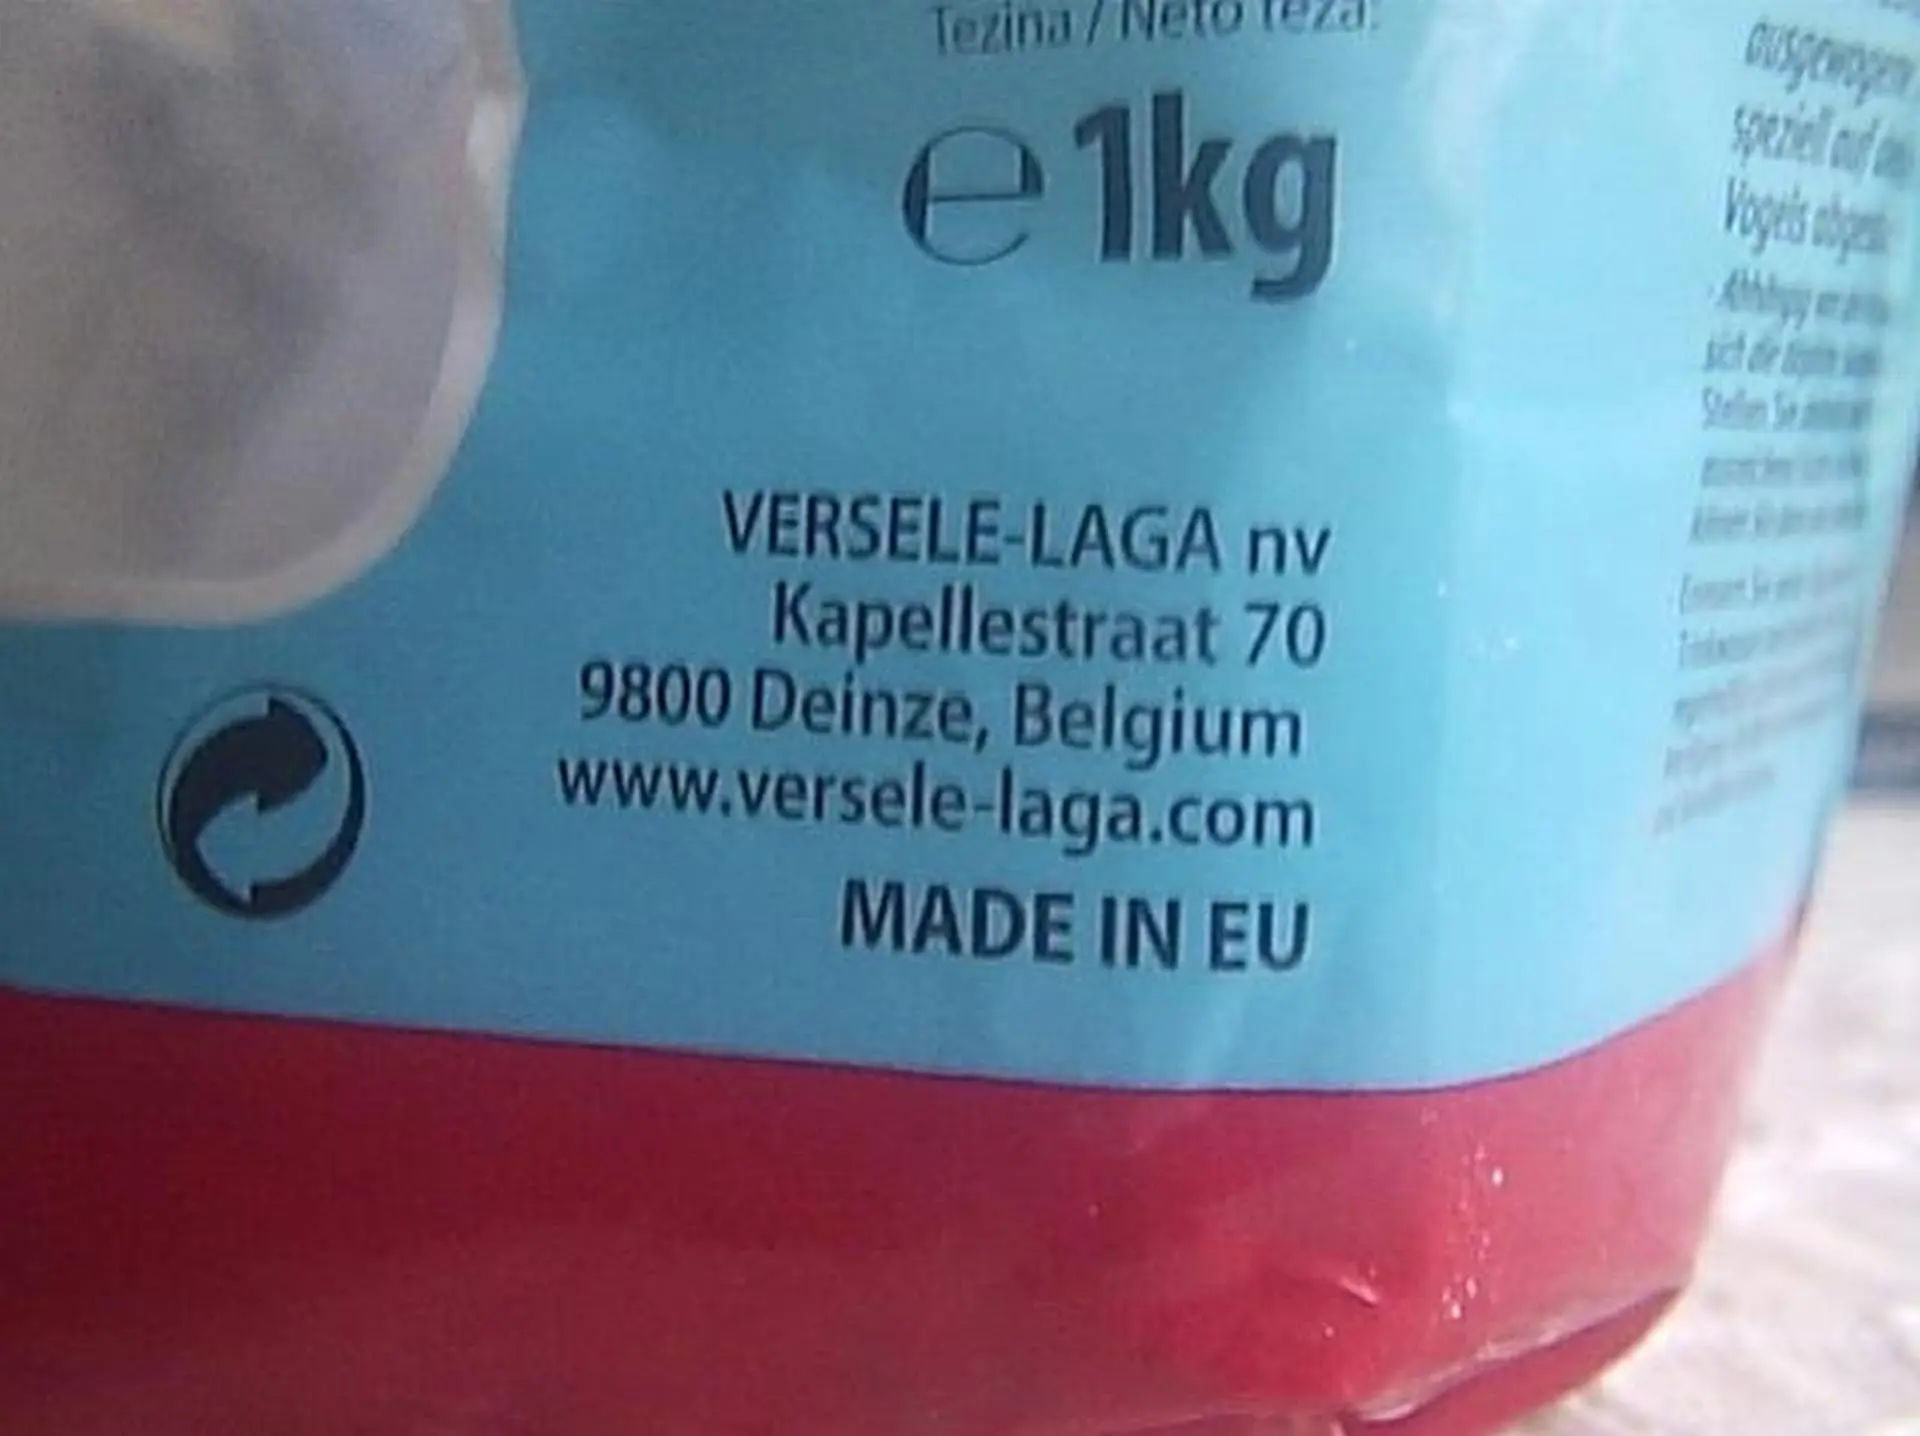 Made in EU.